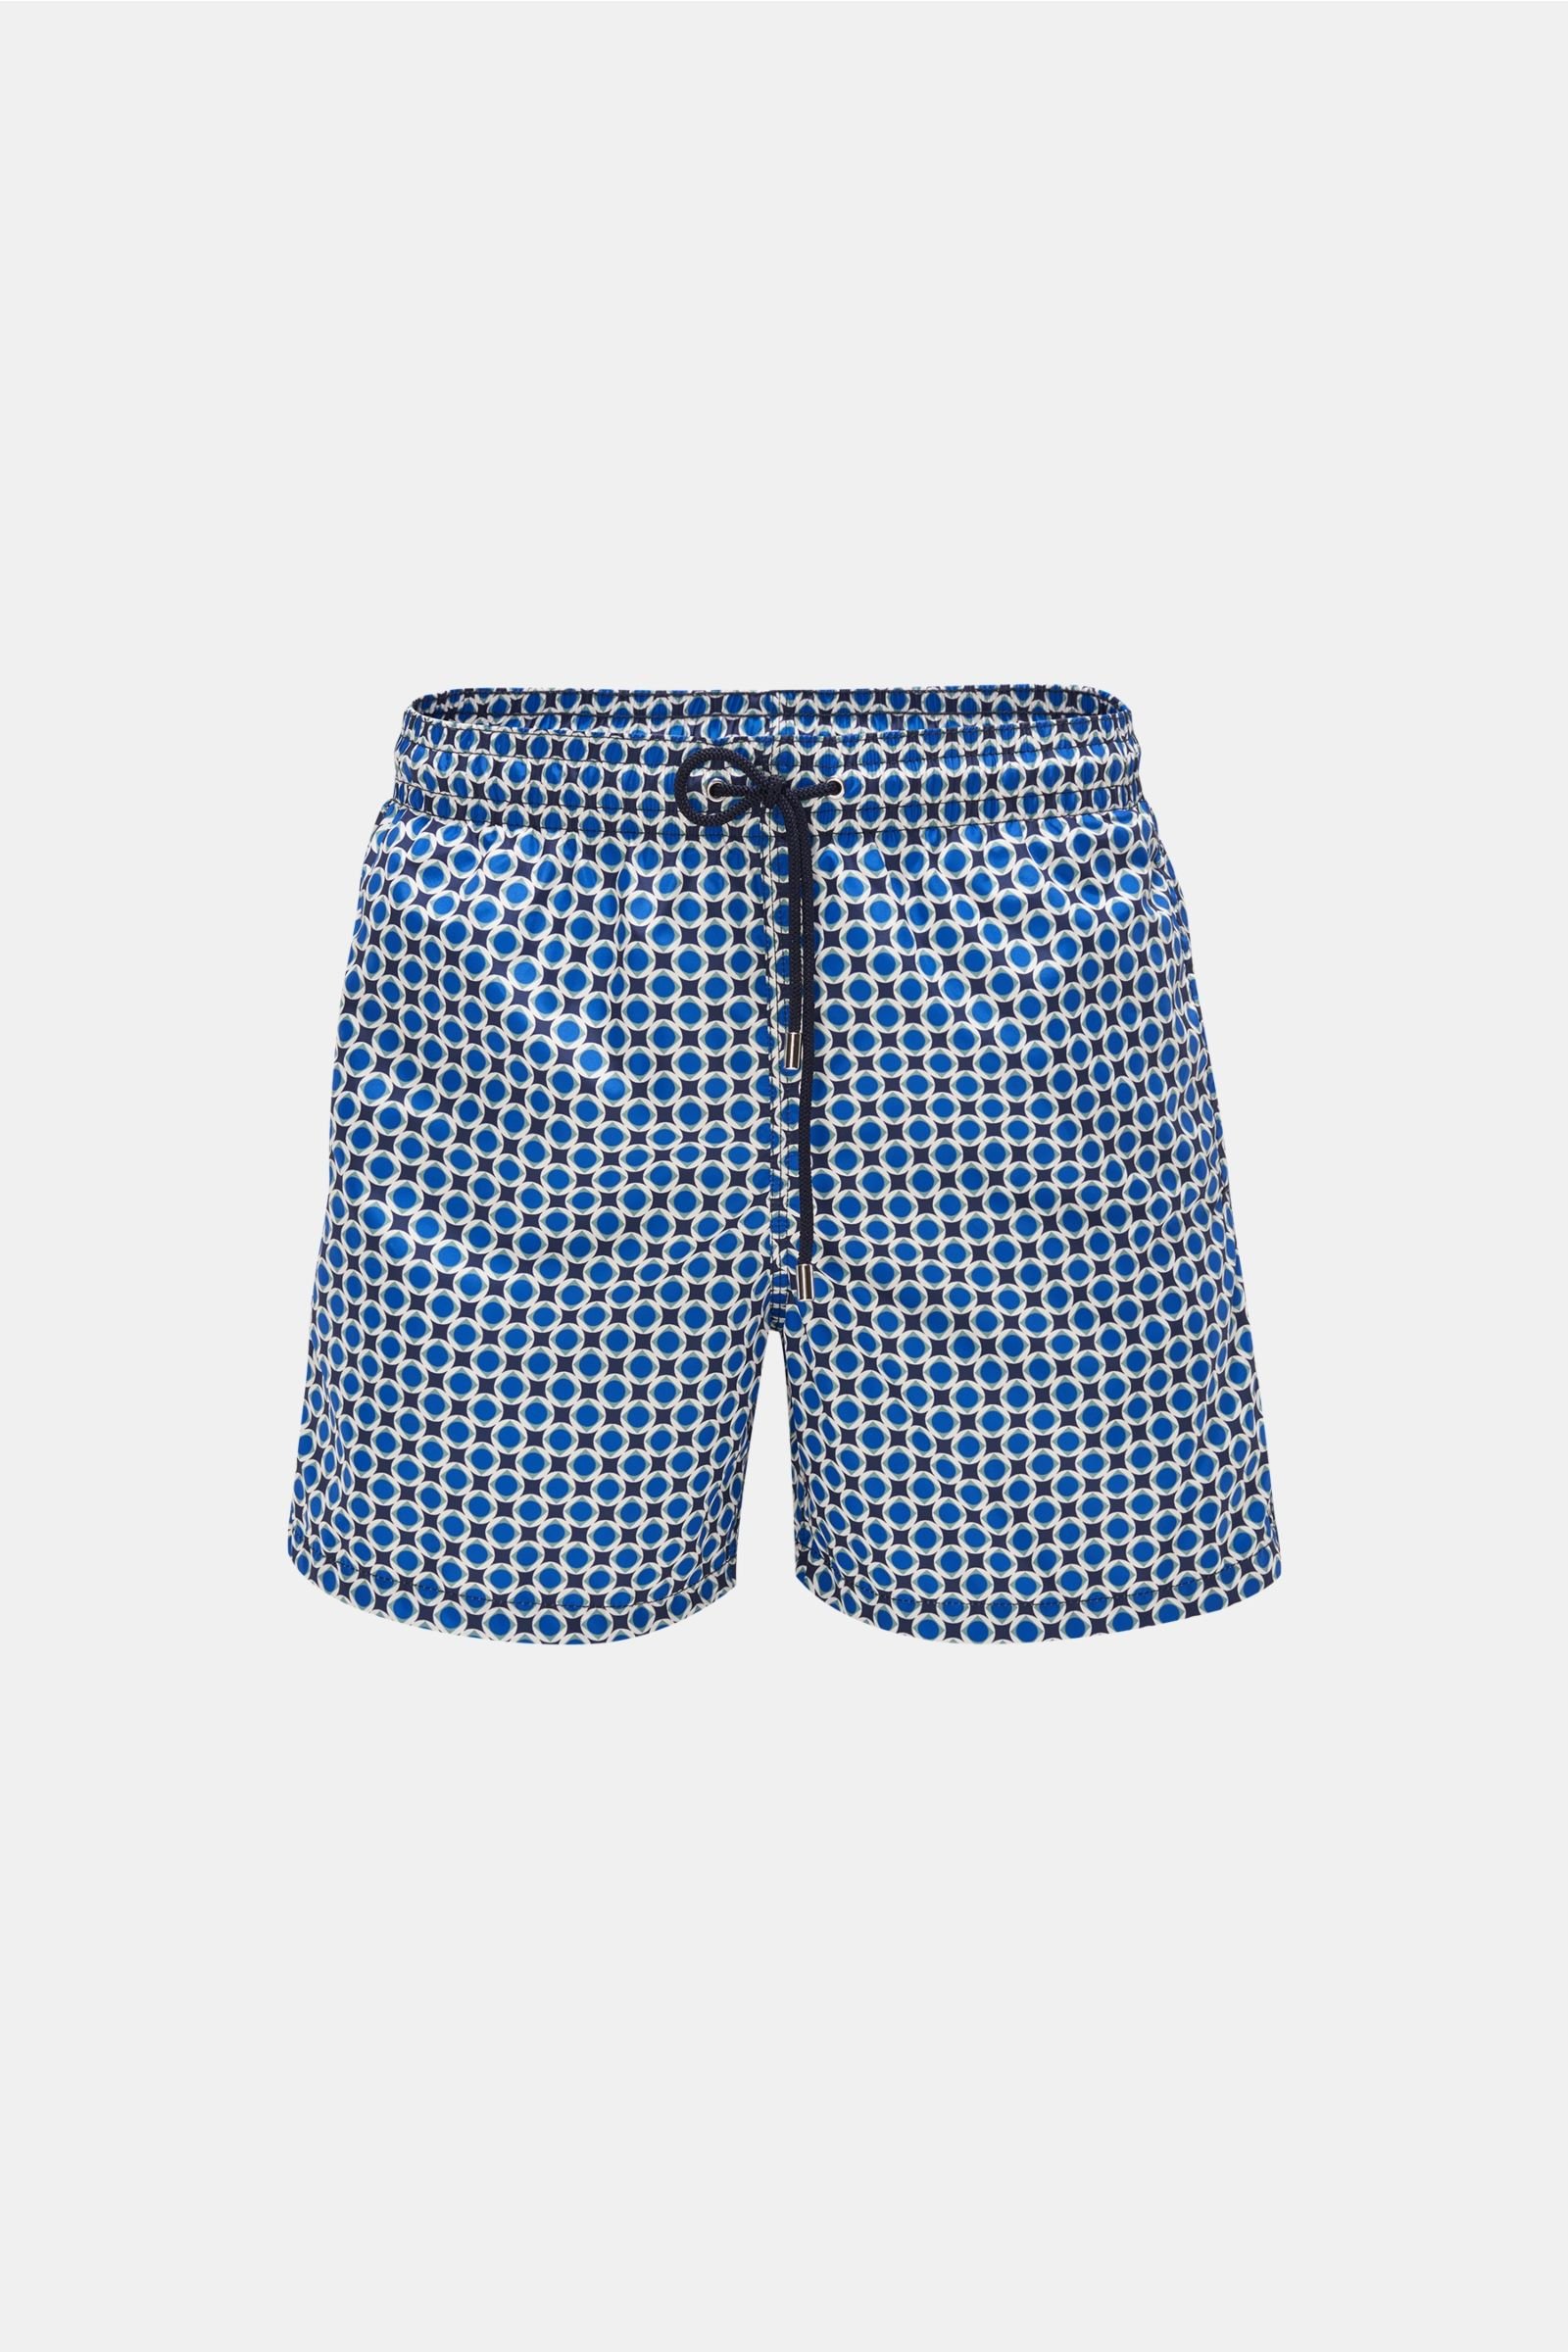 Swim shorts 'Stromboli' dark blue/navy patterned